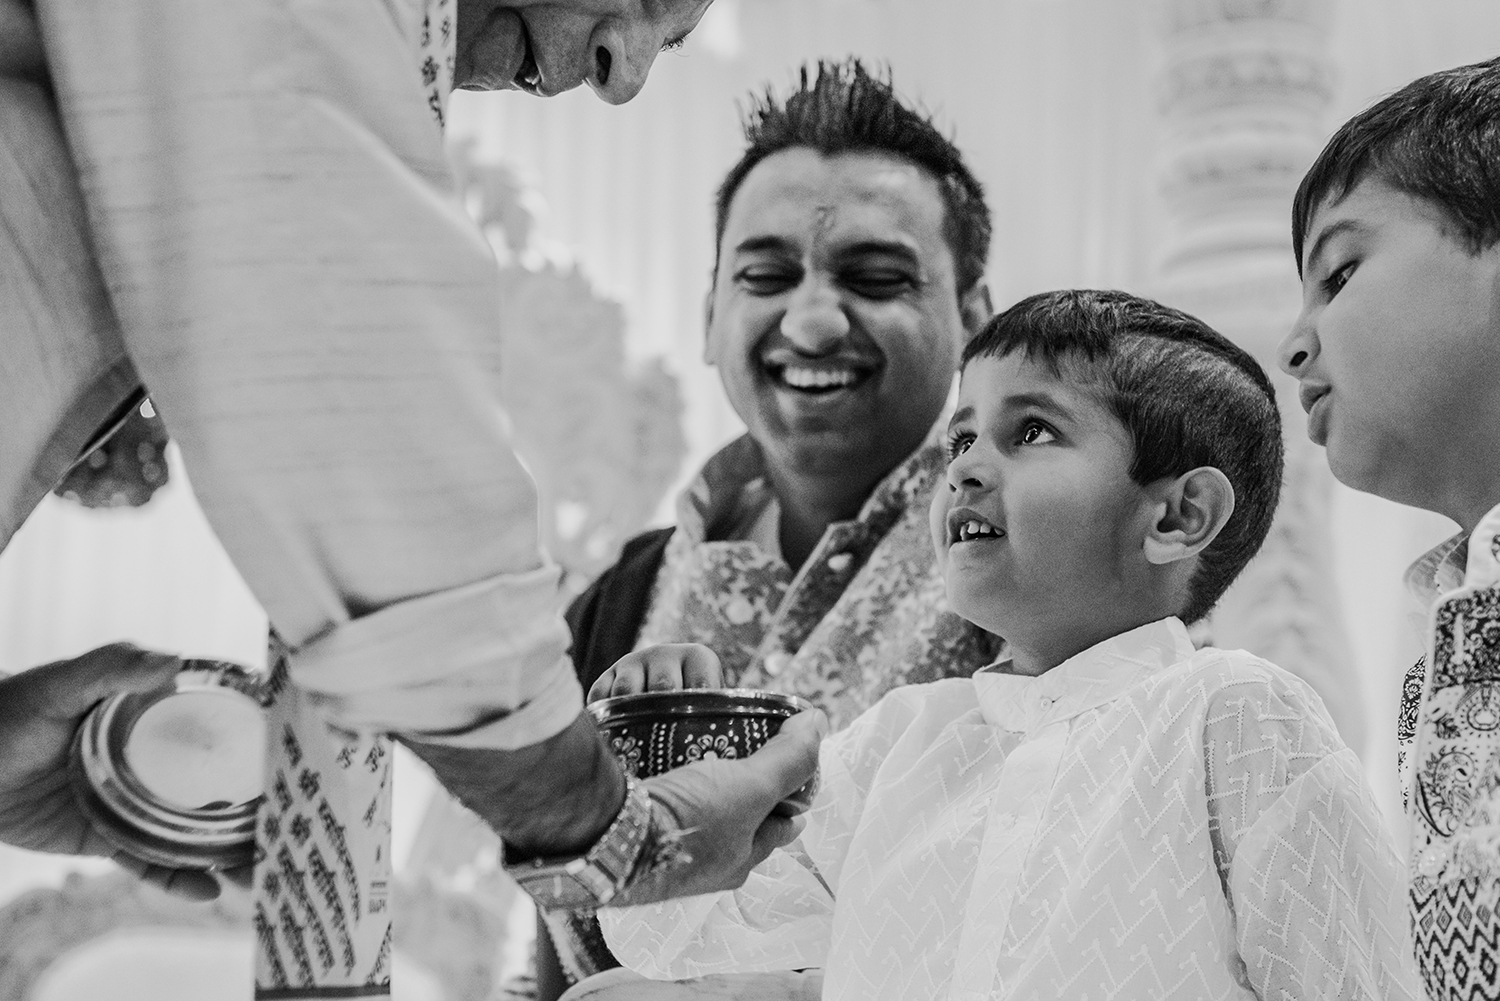  bw photo of Indian boy before wedding 